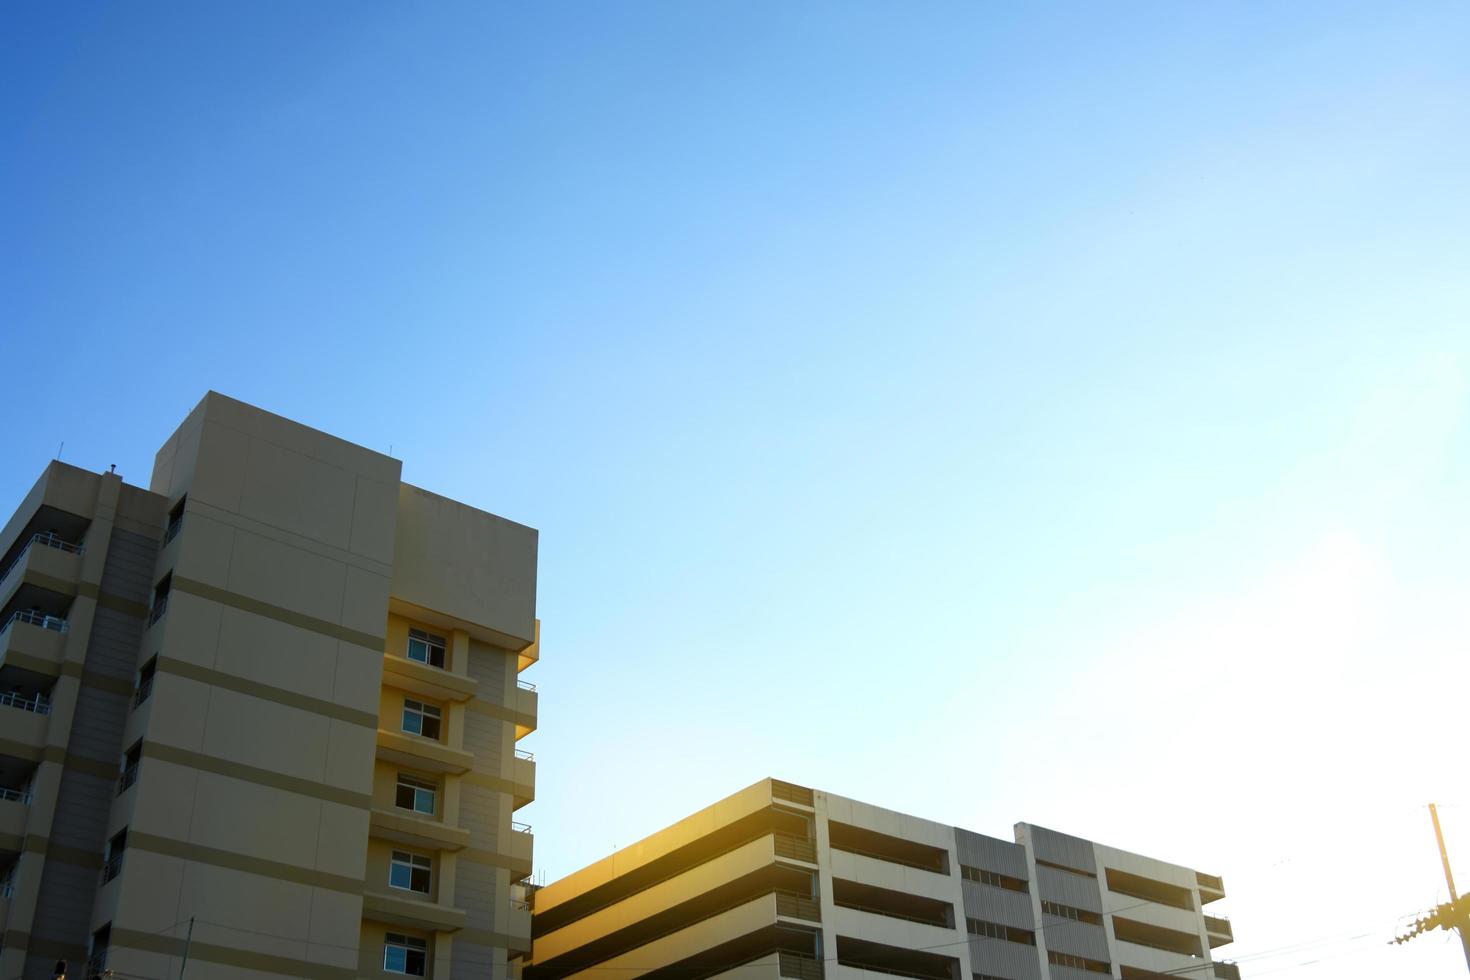 bâtiment moderne contre un ciel bleu photo